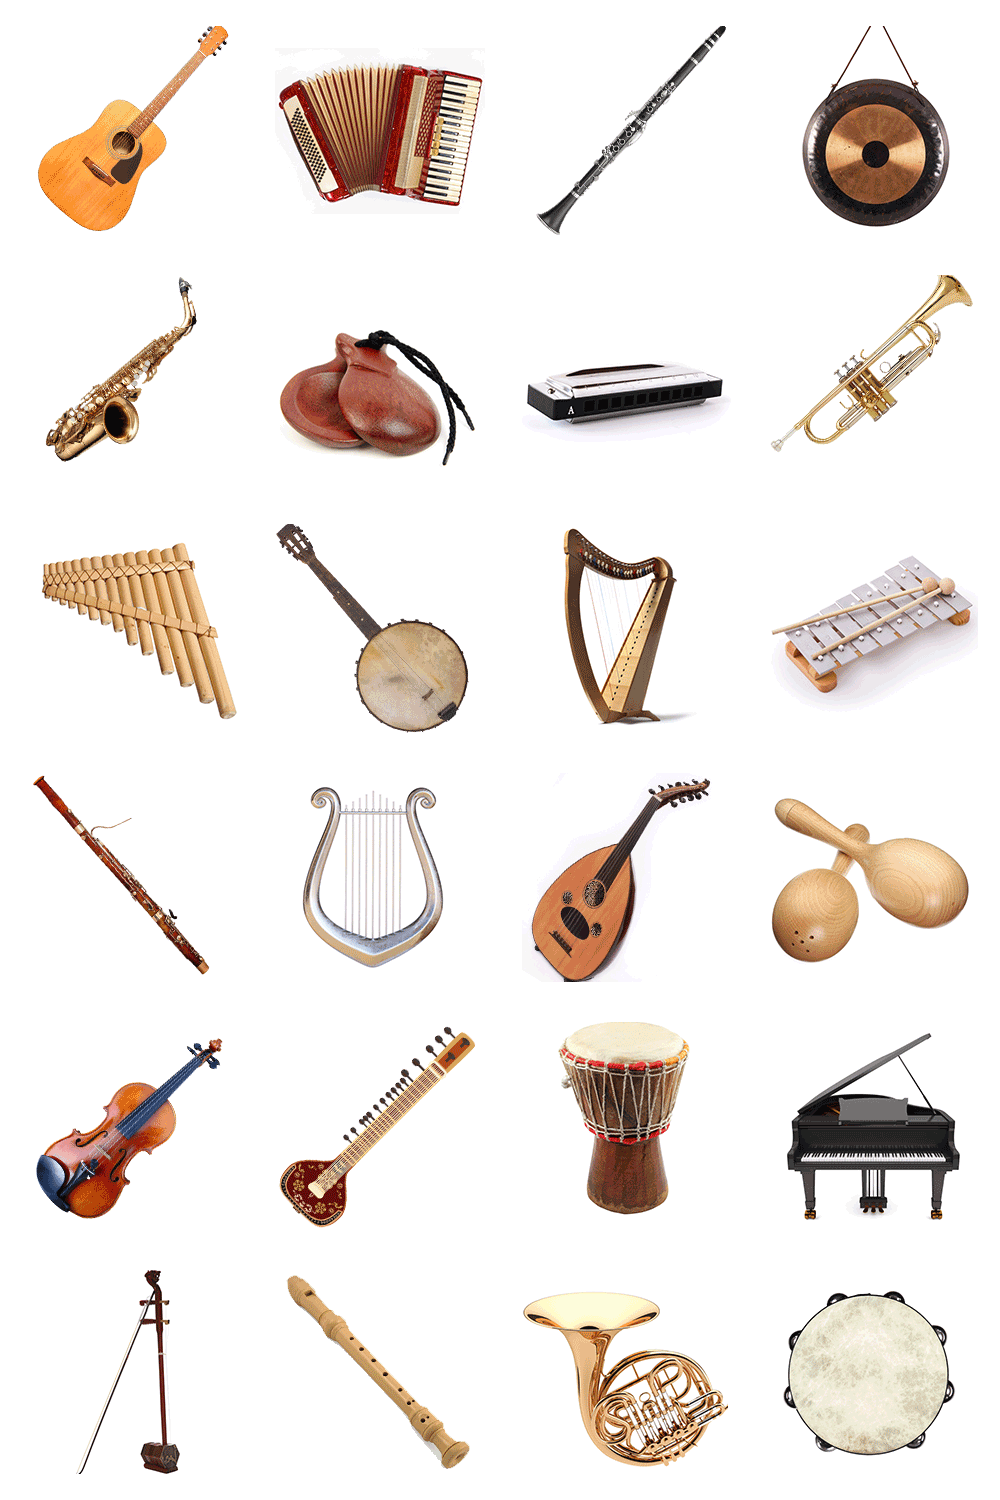 Музыкальный инструмент на е. Музыкальные инструменты. Музыкальные инструмнт. Музыкальный и=нструмент. Музыкпльныеинструменты.